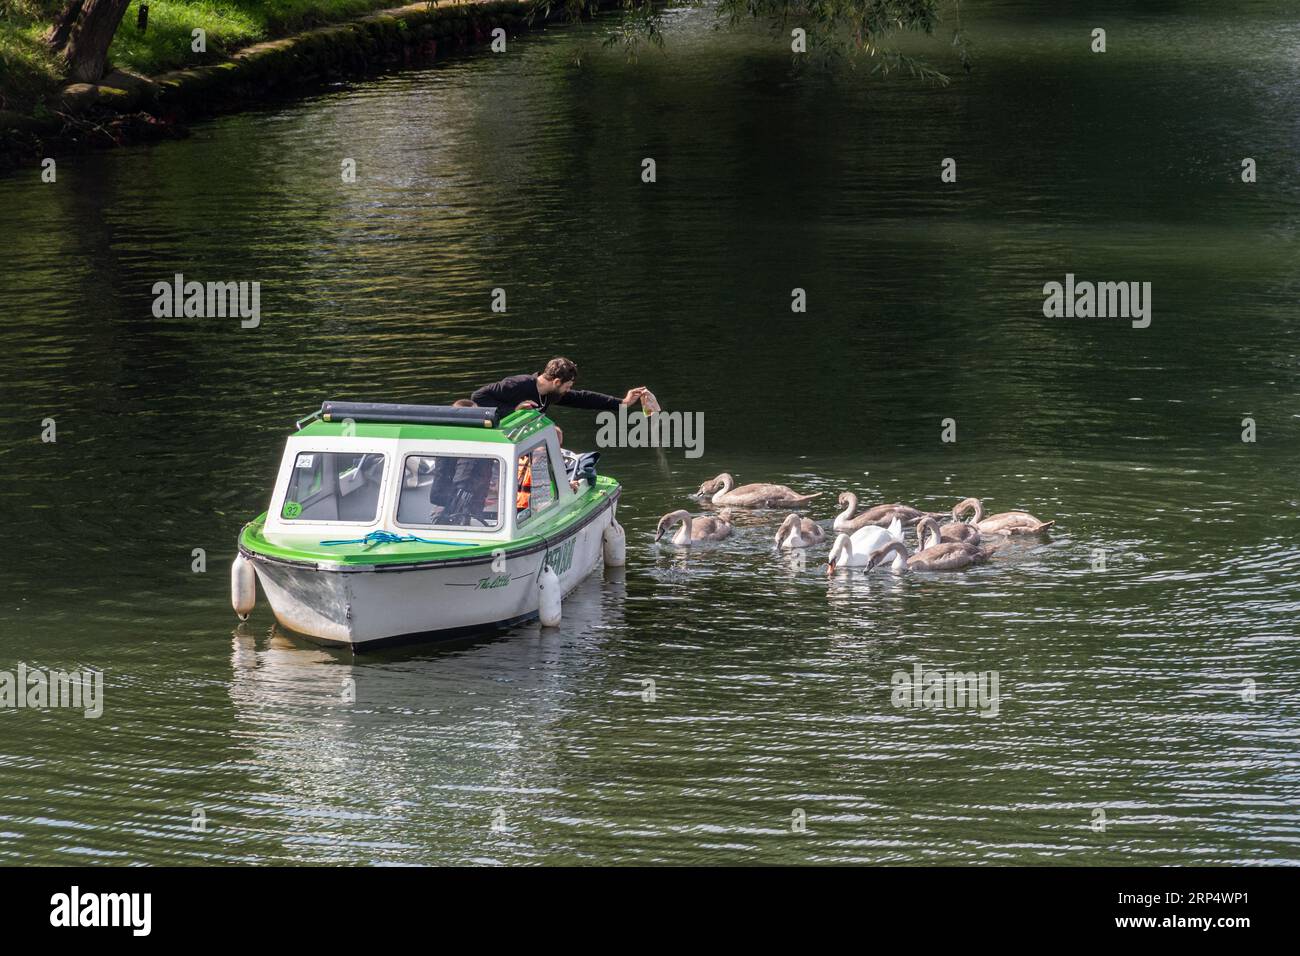 Homme en bateau nourrissant une famille de cygnes (cygne muet Cygnus olor et plusieurs cygnets) sur la Tamise à Staines-upon-Thames, Surrey, Angleterre, Royaume-Uni Banque D'Images